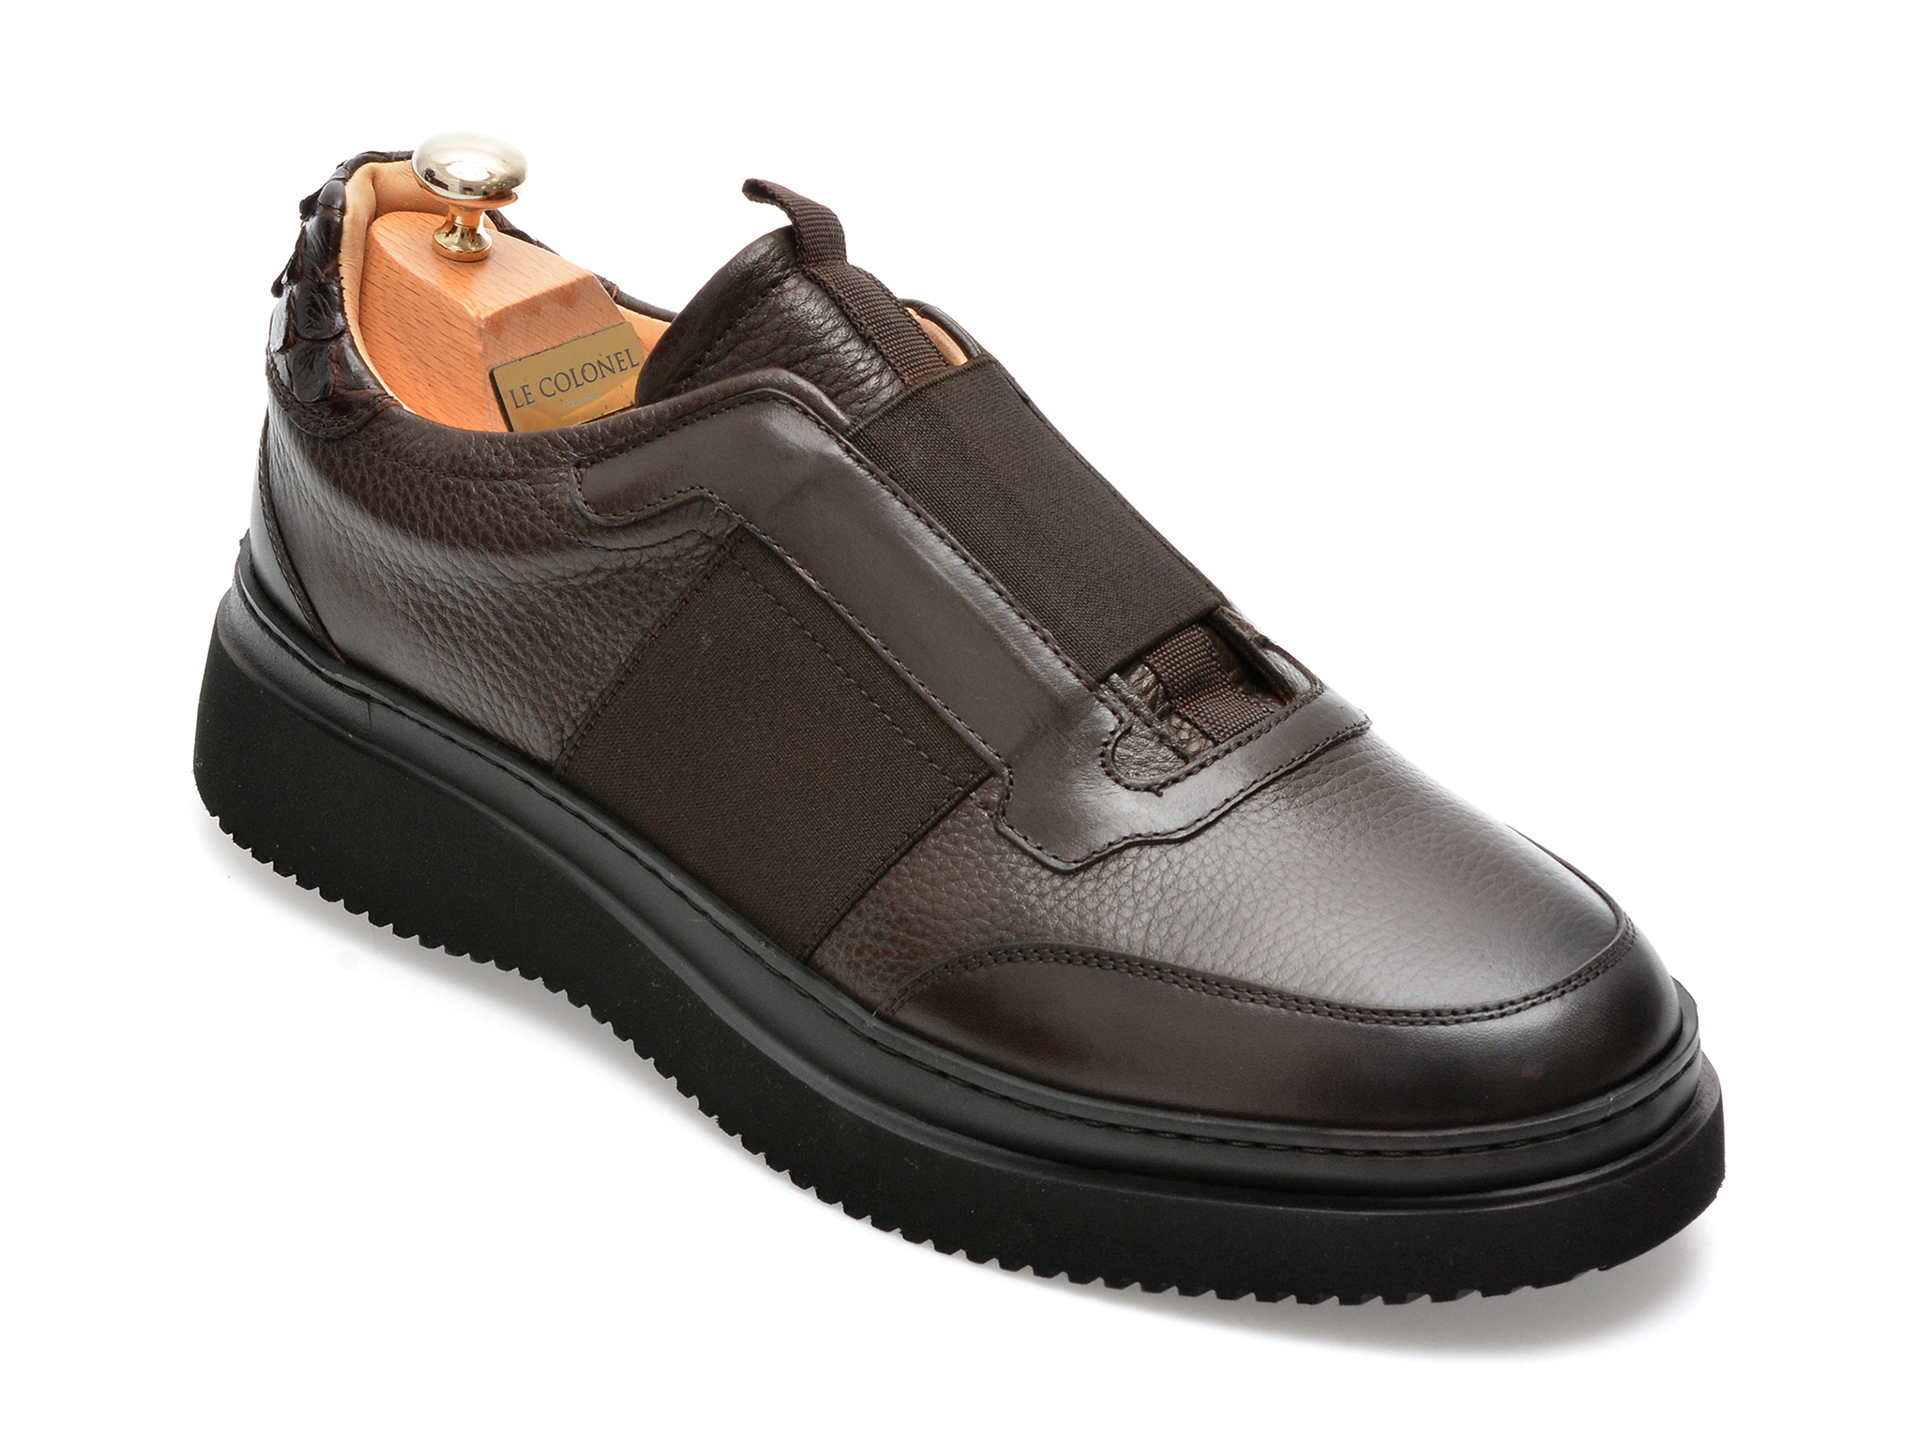 Pantofi LE COLONEL maro, 64833, din piele naturala femei 2023-03-21